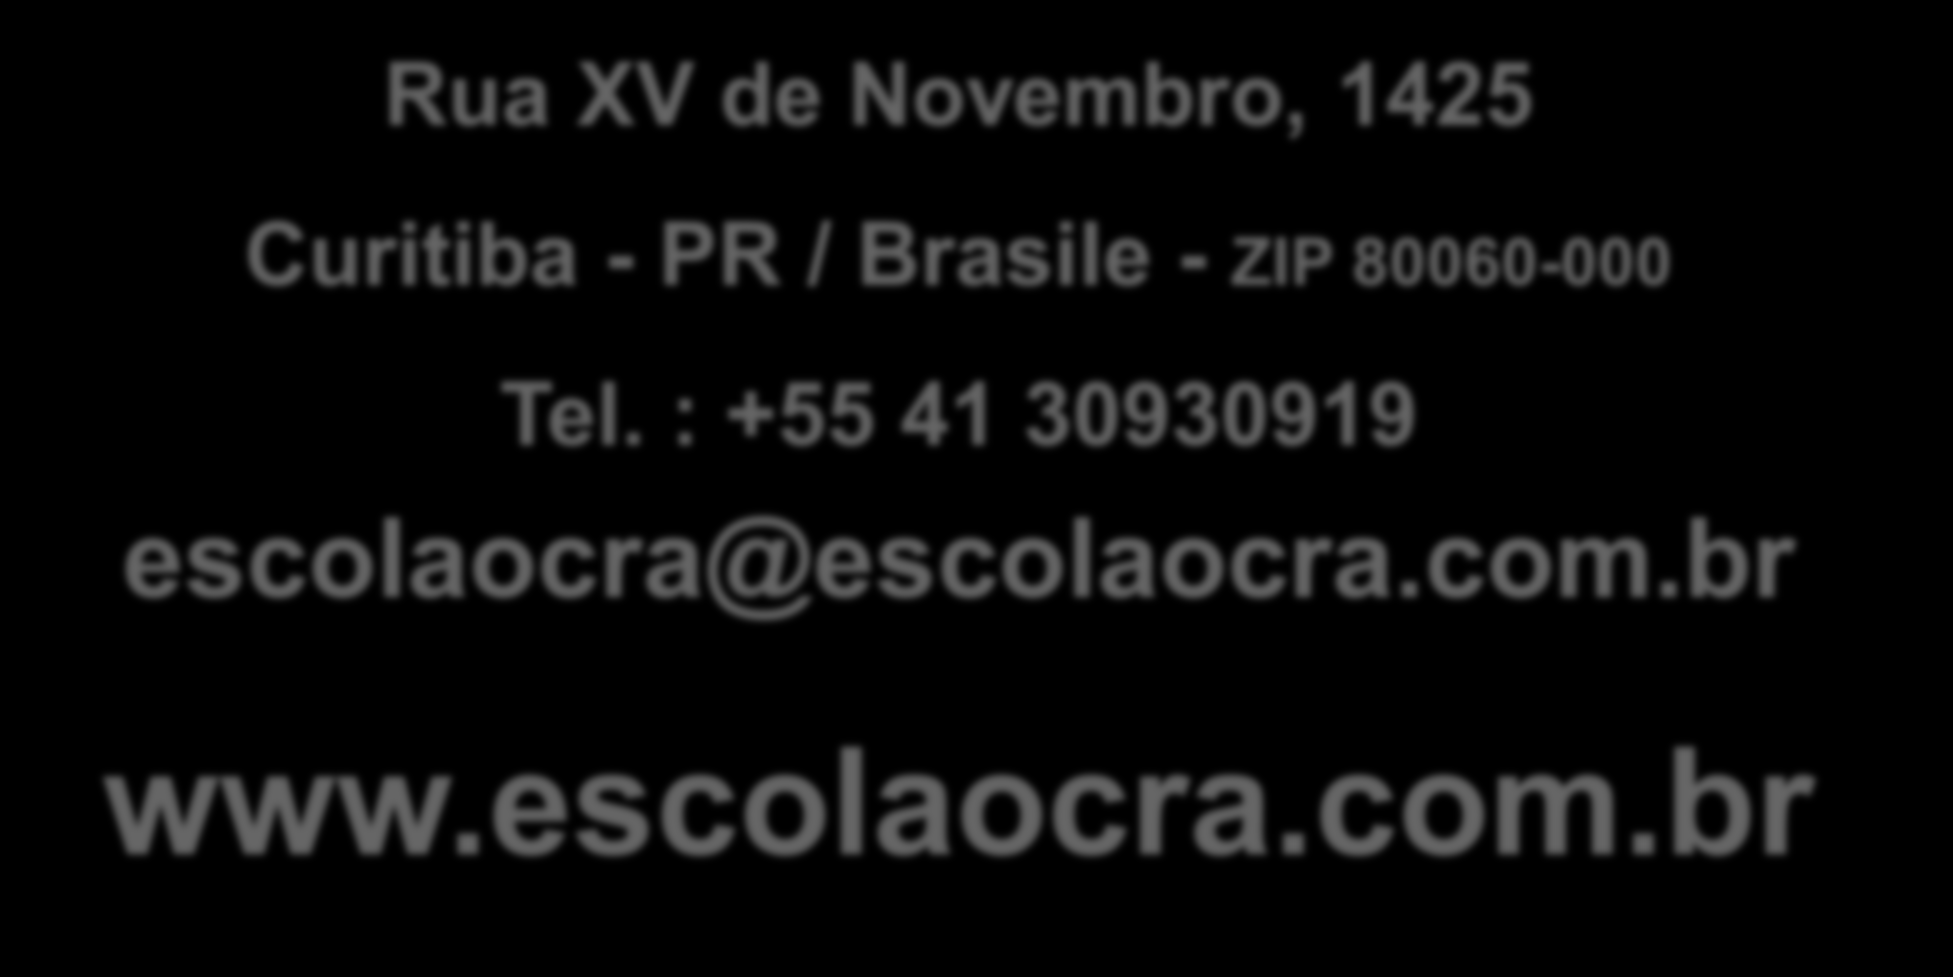 Rua XV de Novembro, 1425 Curitiba - PR / Brasile - ZIP 80060-000 Tel.